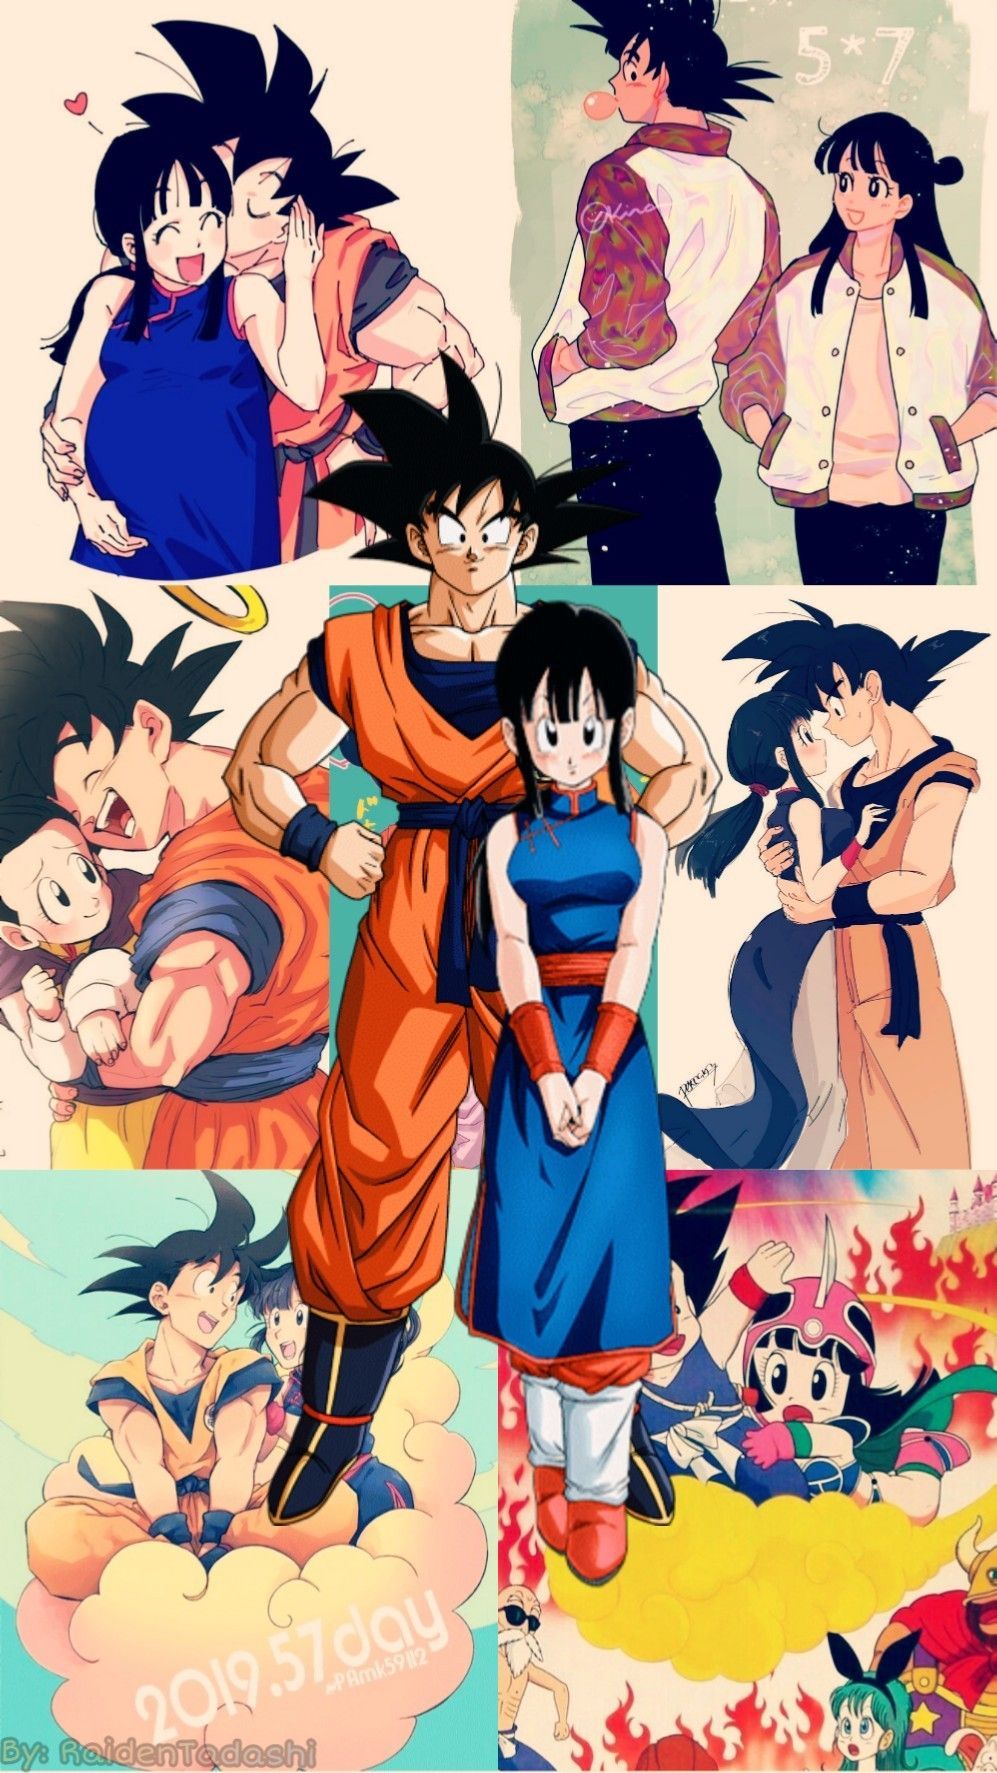 Goku And Chichi Wallpapers